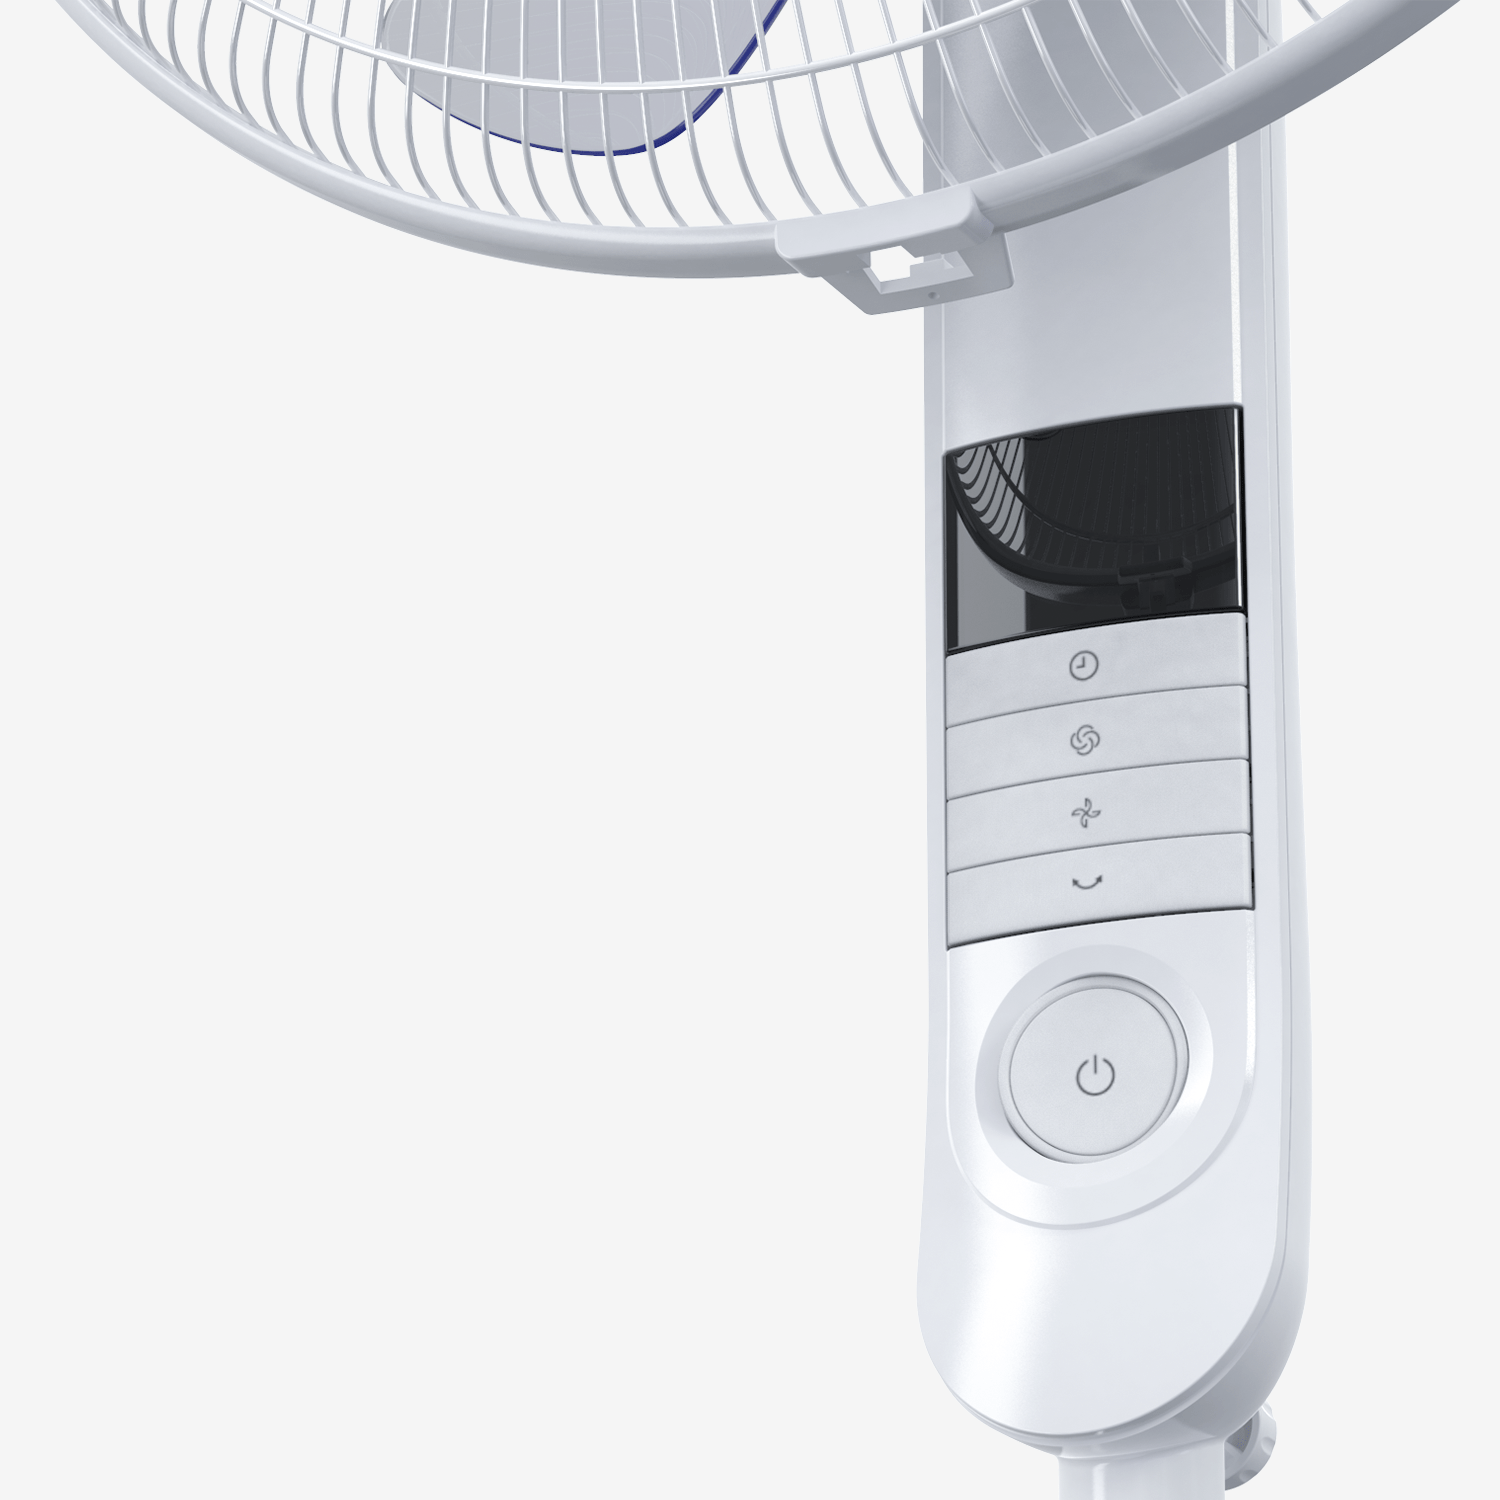 Ventilador de pedestal de 16" com 4 modos de ventilador e controle remoto - branco